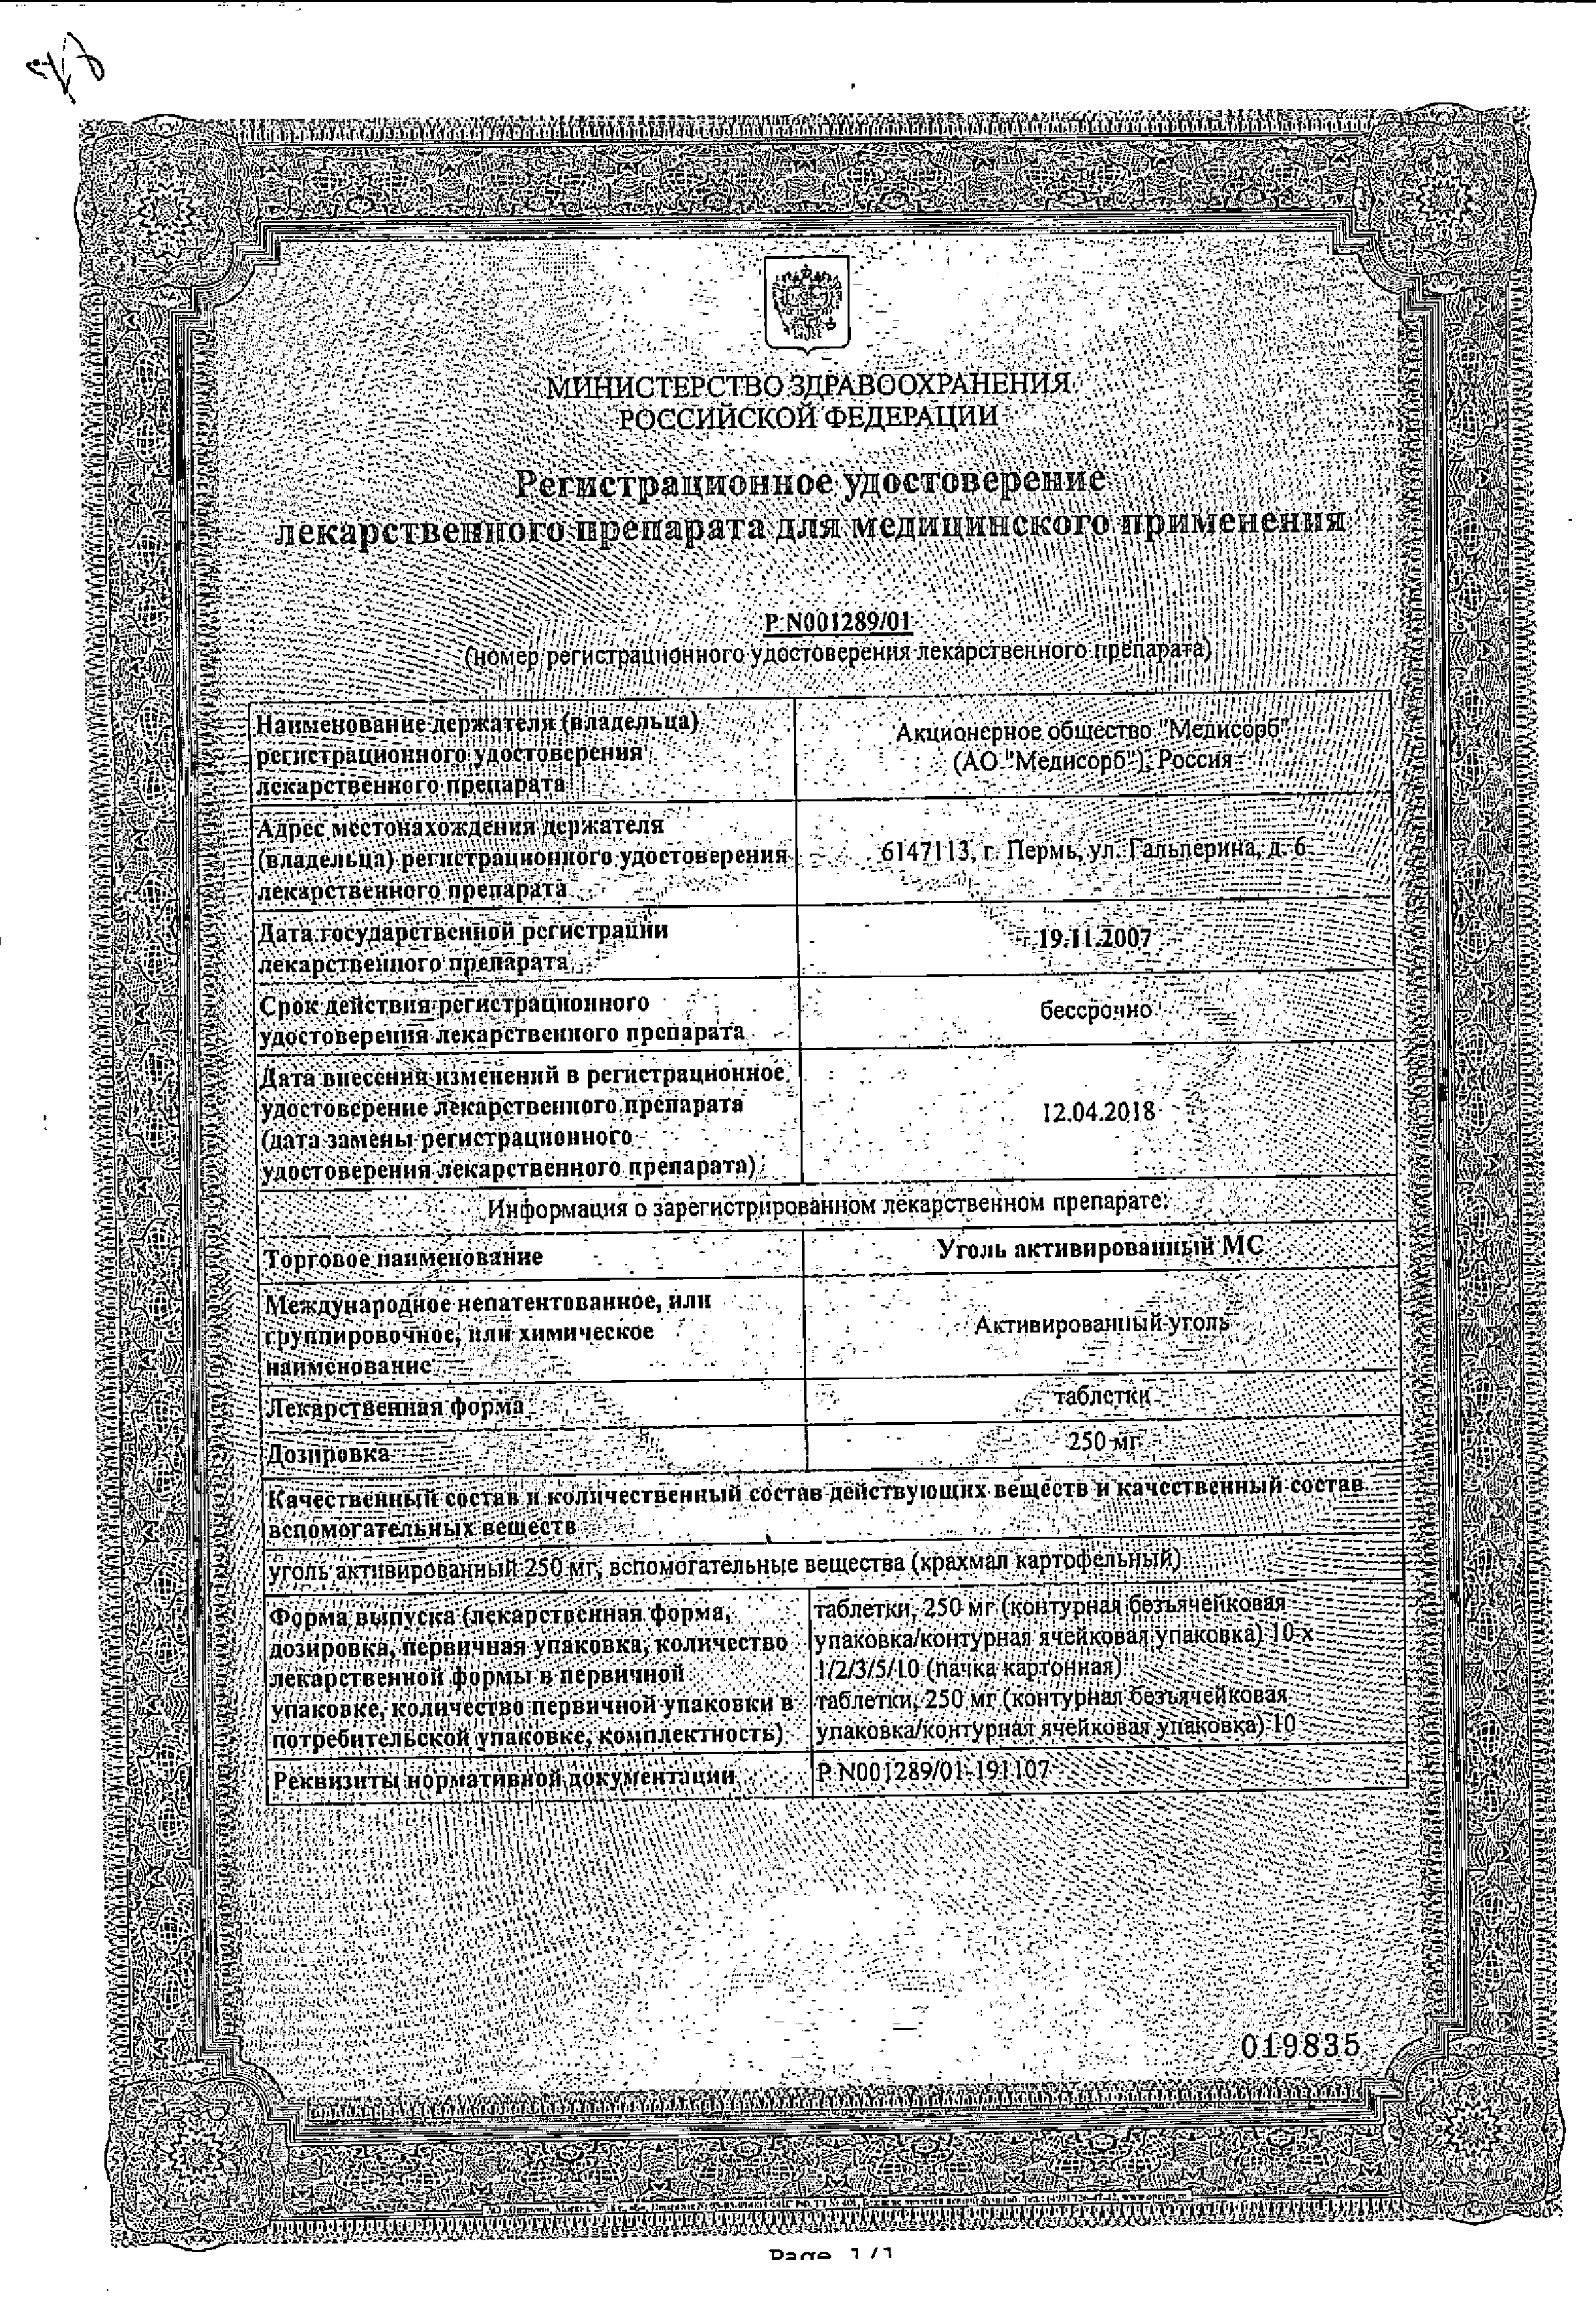 Уголь активированный МС сертификат